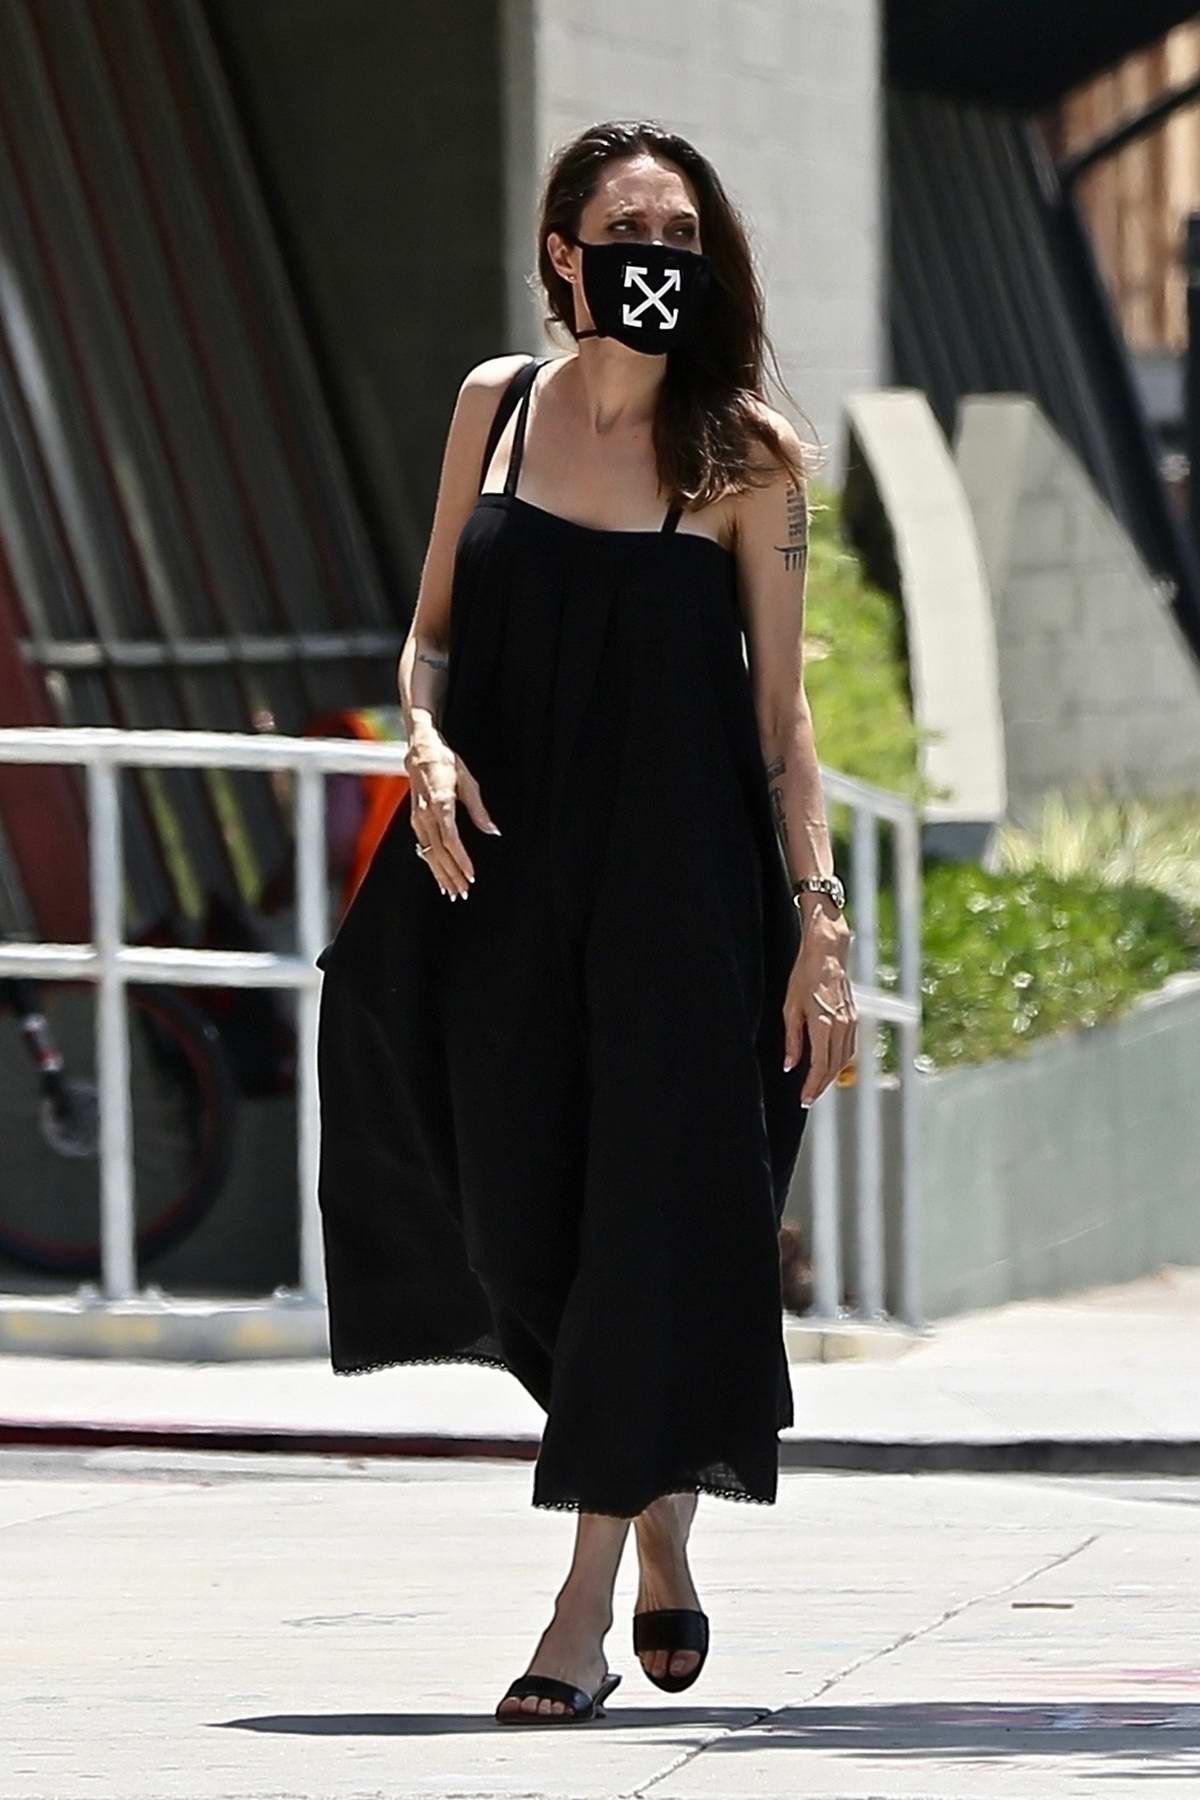 Анджелина Джоли в стильной маске прогулялась с сыном в Лос-Анджелесе